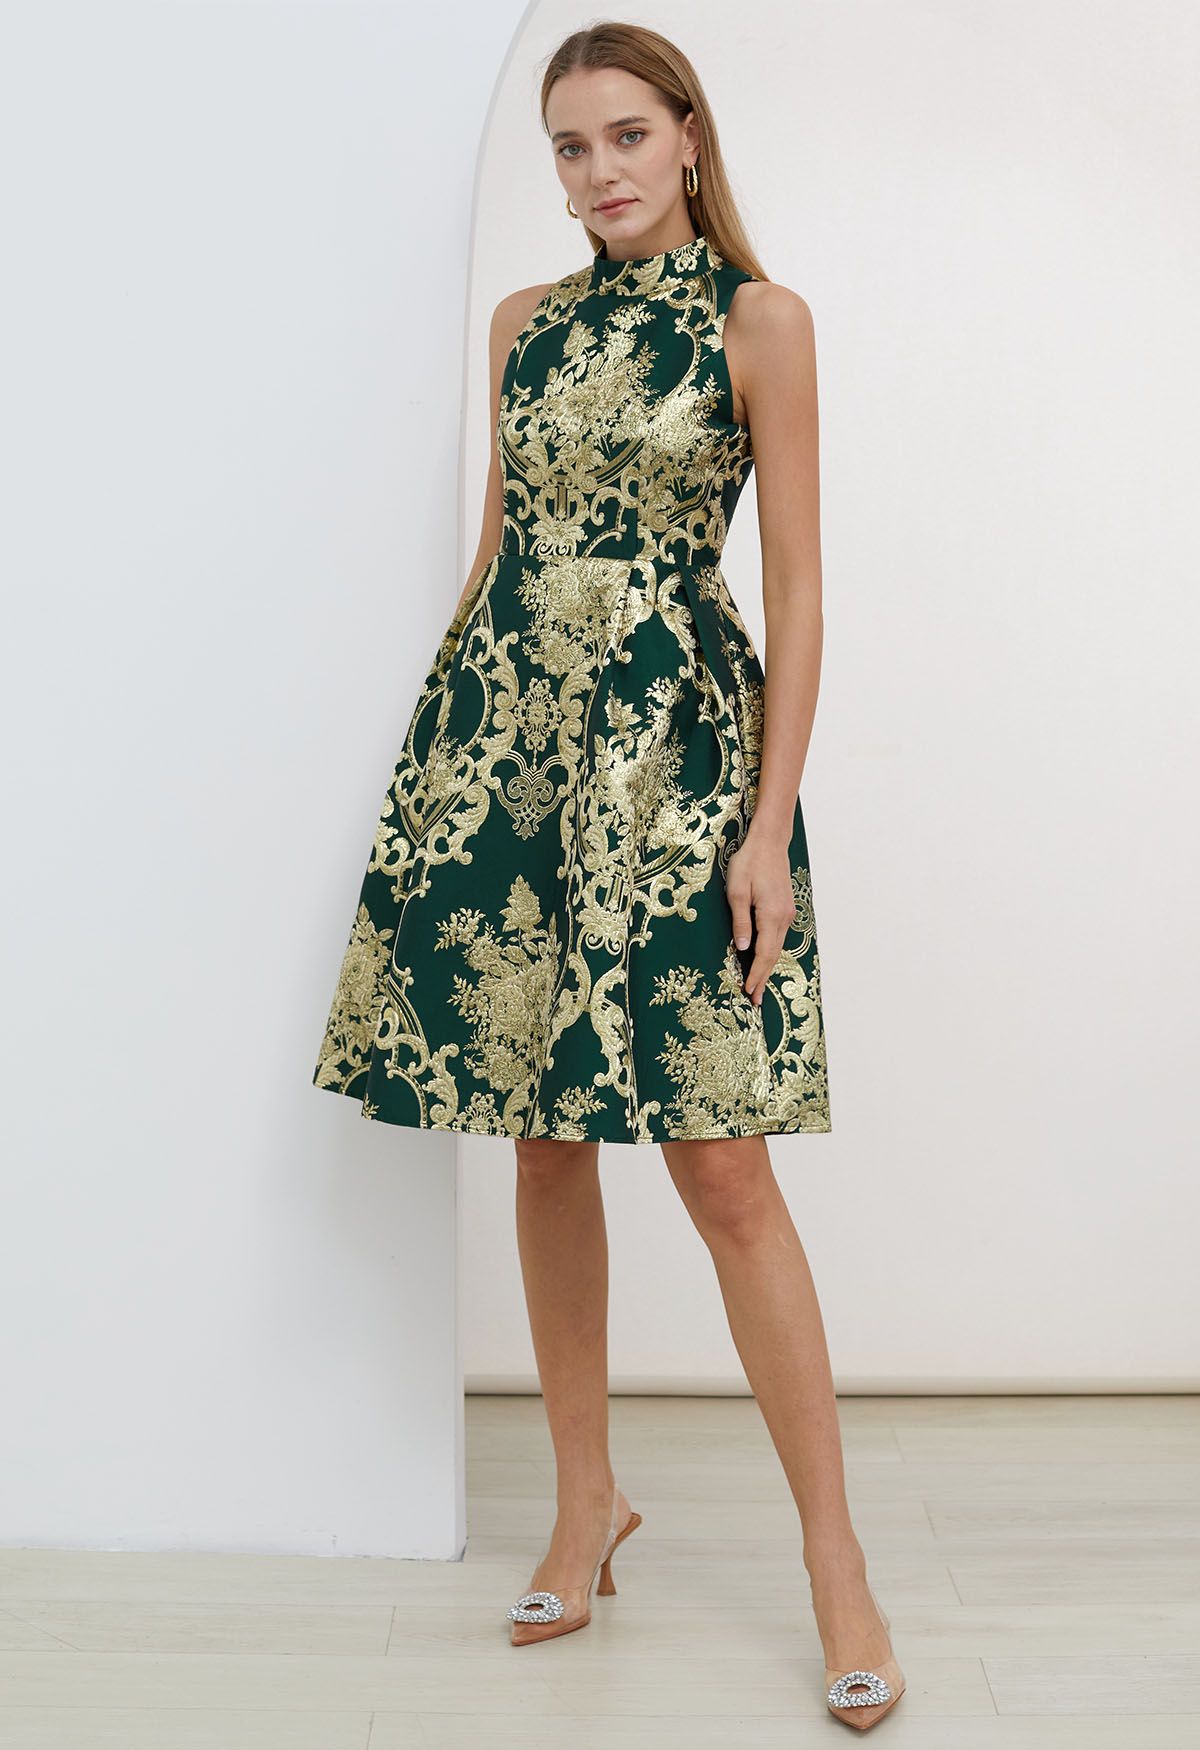 فستان رائع من الفاوانيا الباروك جاكار بلا أكمام باللون الأخضر الداكن